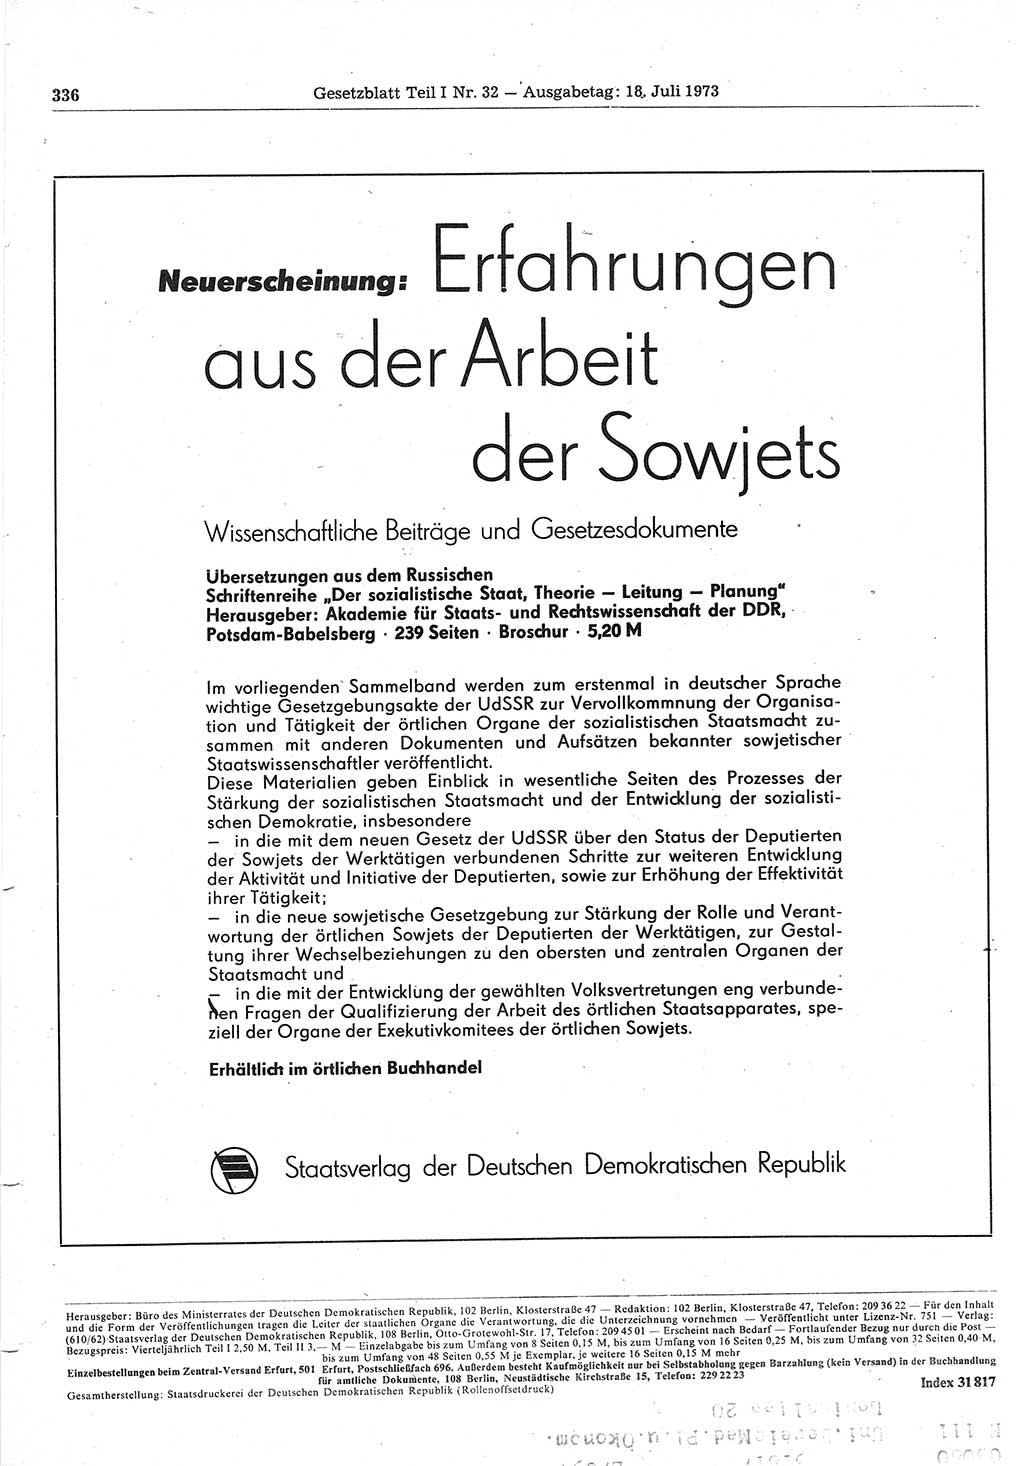 Gesetzblatt (GBl.) der Deutschen Demokratischen Republik (DDR) Teil Ⅰ 1973, Seite 336 (GBl. DDR Ⅰ 1973, S. 336)